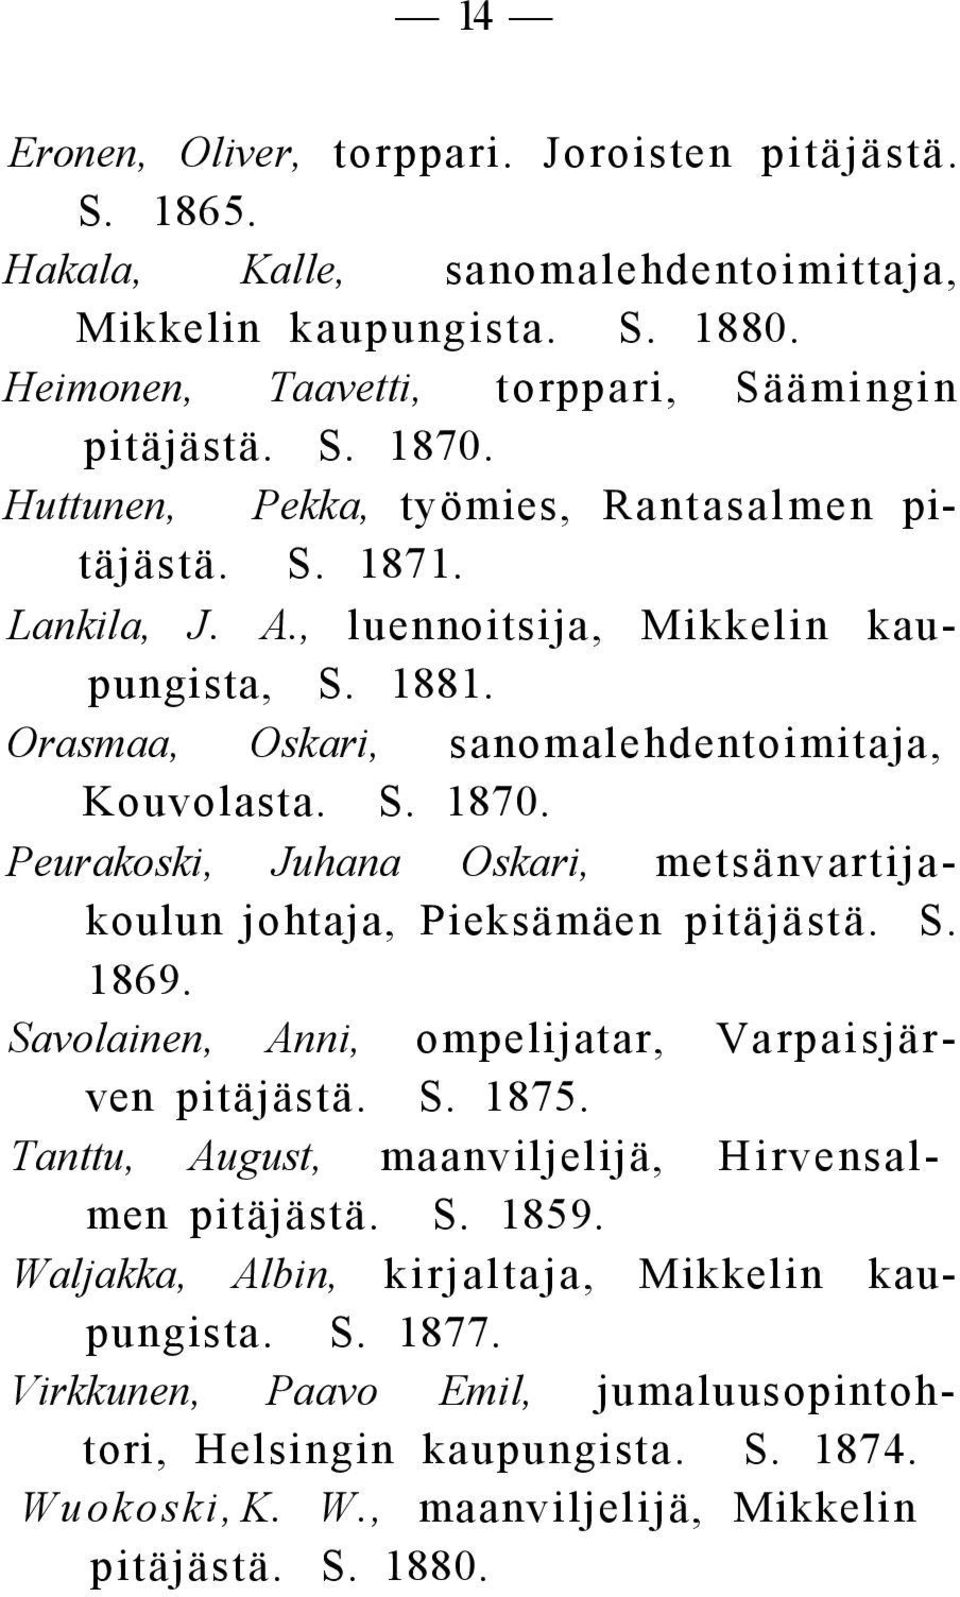 Peurakoski, Juhana Oskari, metsänvartijakoulun johtaja, Pieksämäen pitäjästä. S. 1869. Savolainen, Anni, ompelijatar, Varpaisjärven pitäjästä. S. 1875.